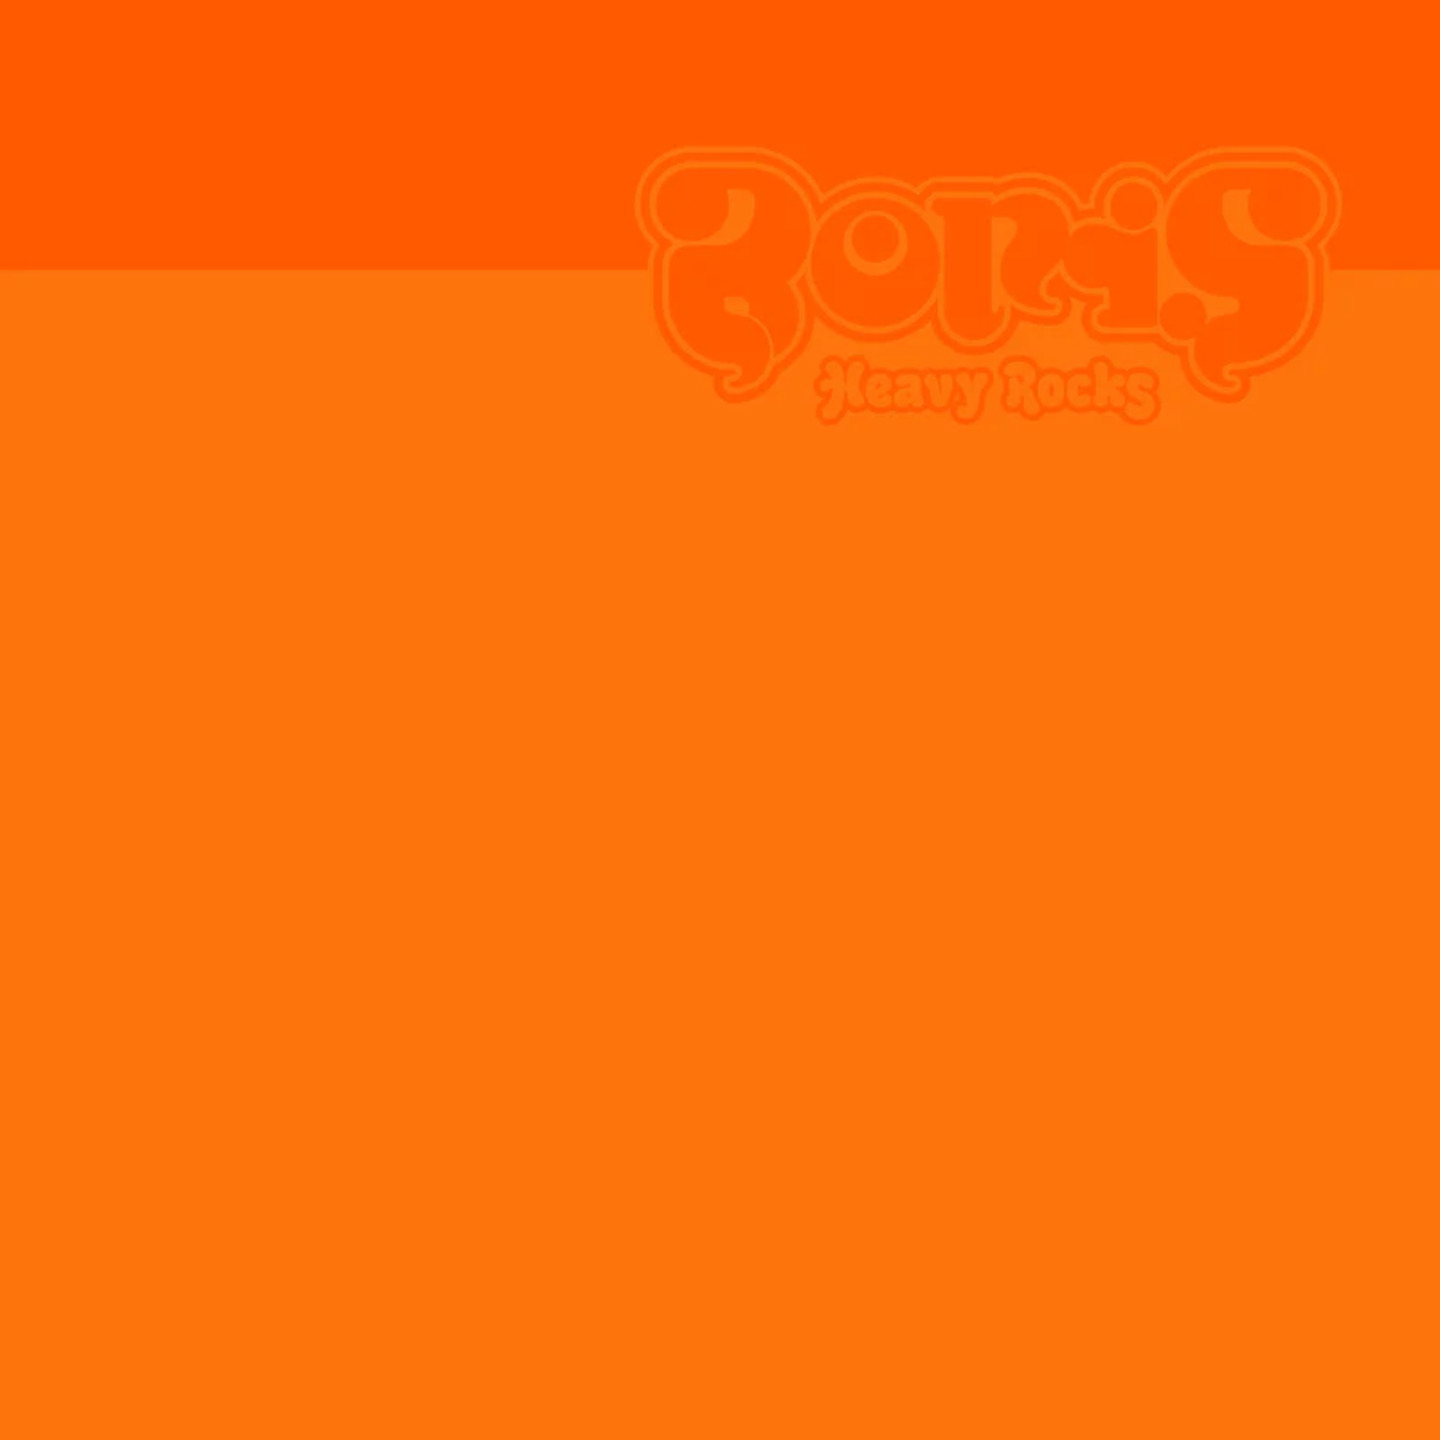 BORIS - Heavy Rocks 2002 2xLP